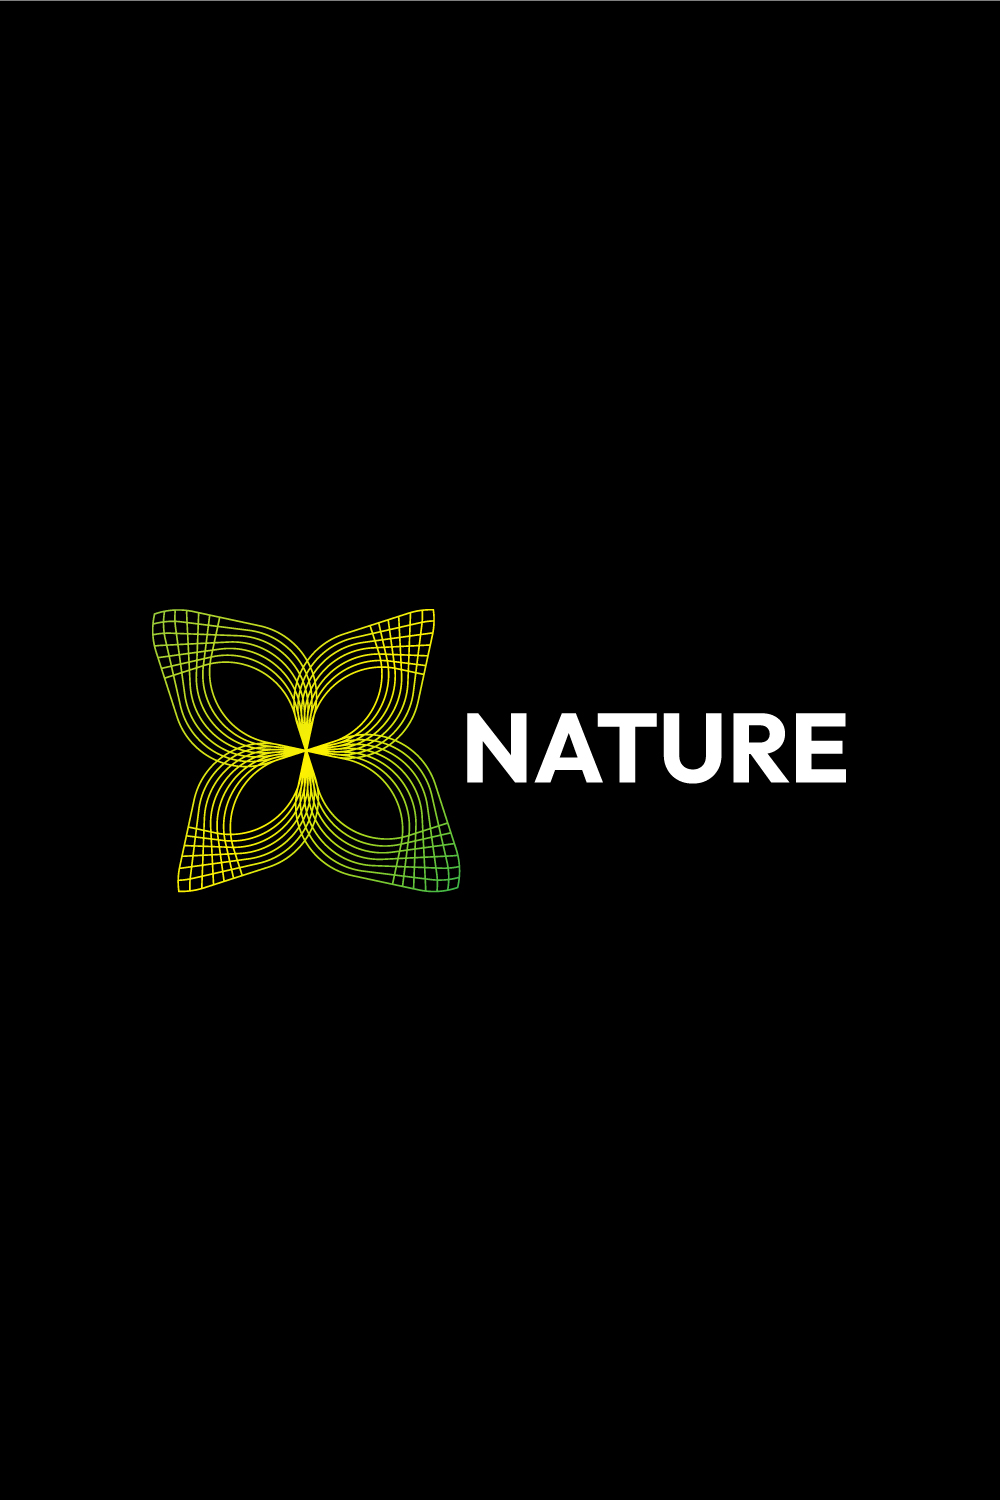 Line Art Nature, Food, and Leaf Logo Designs Bundle pinterest preview image.